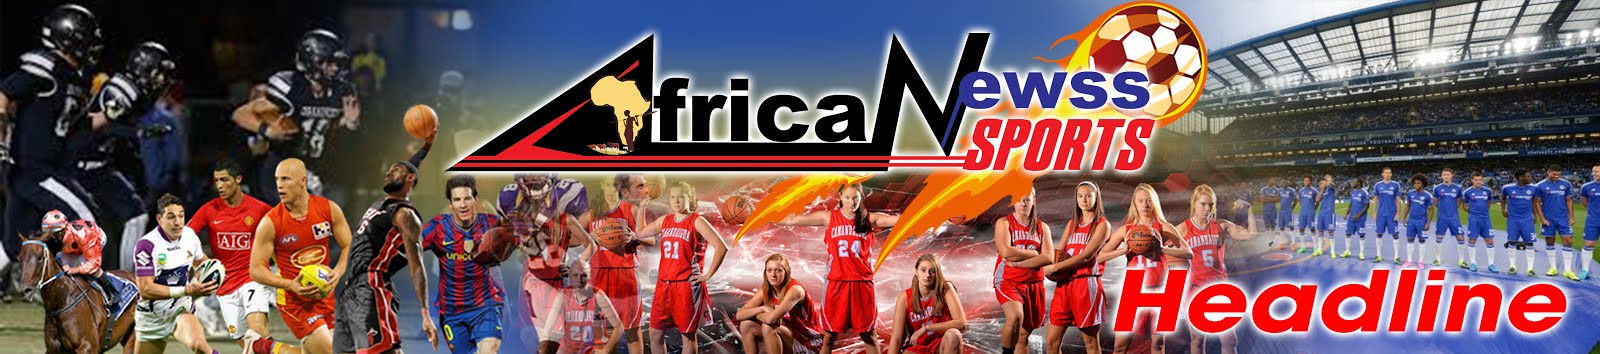 Africa Newss Sport